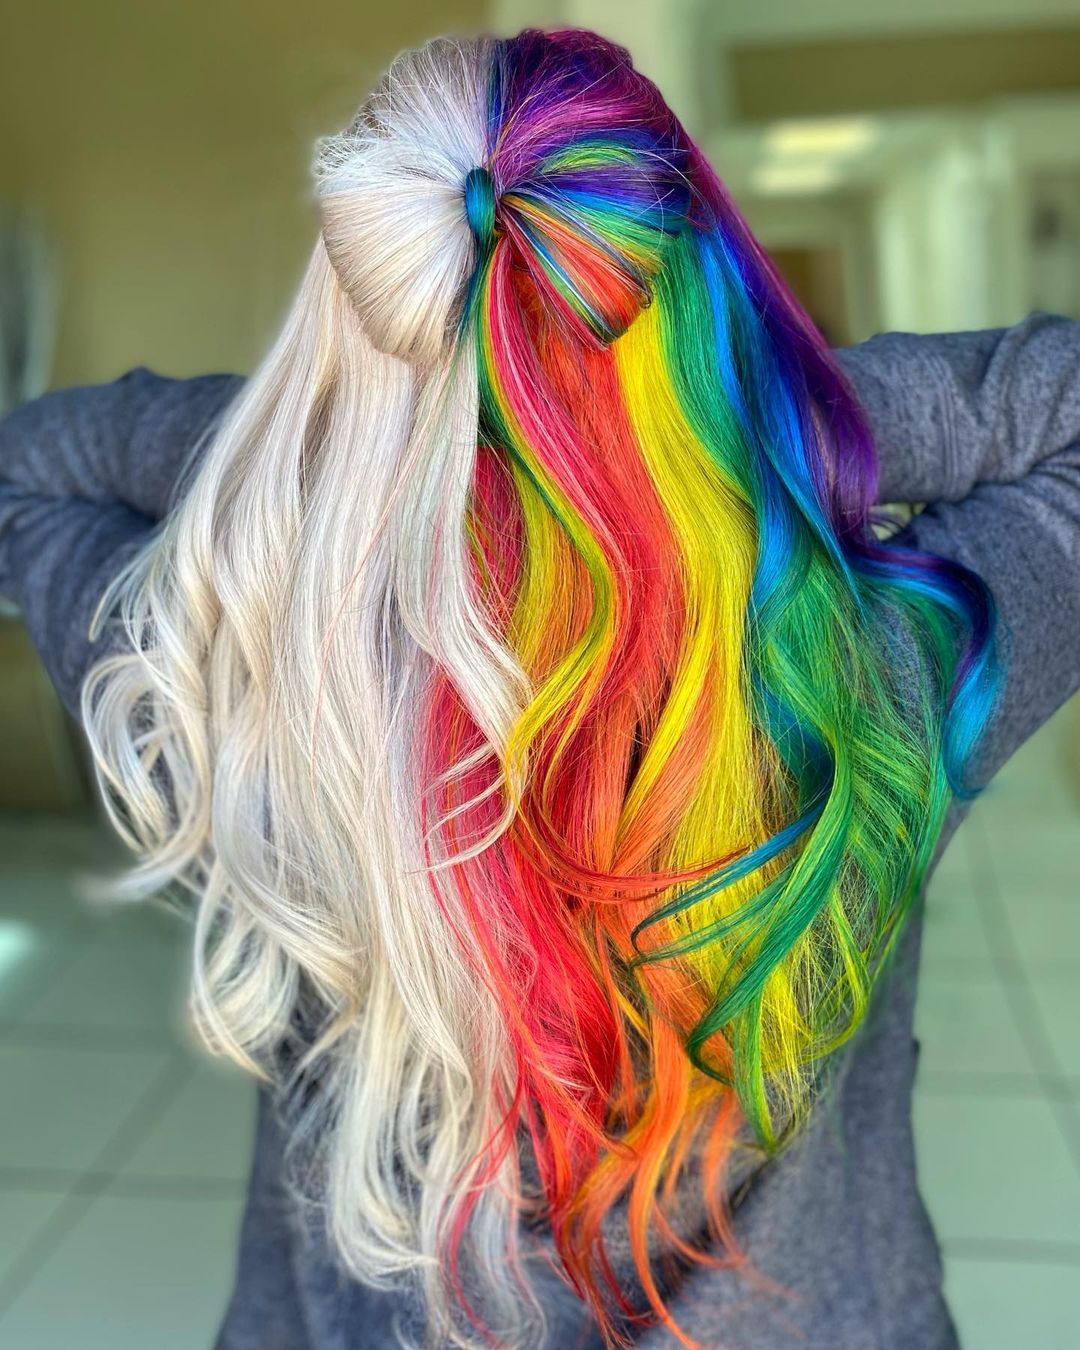 hair-bow-with-half-blonde-half-rainbow-colors